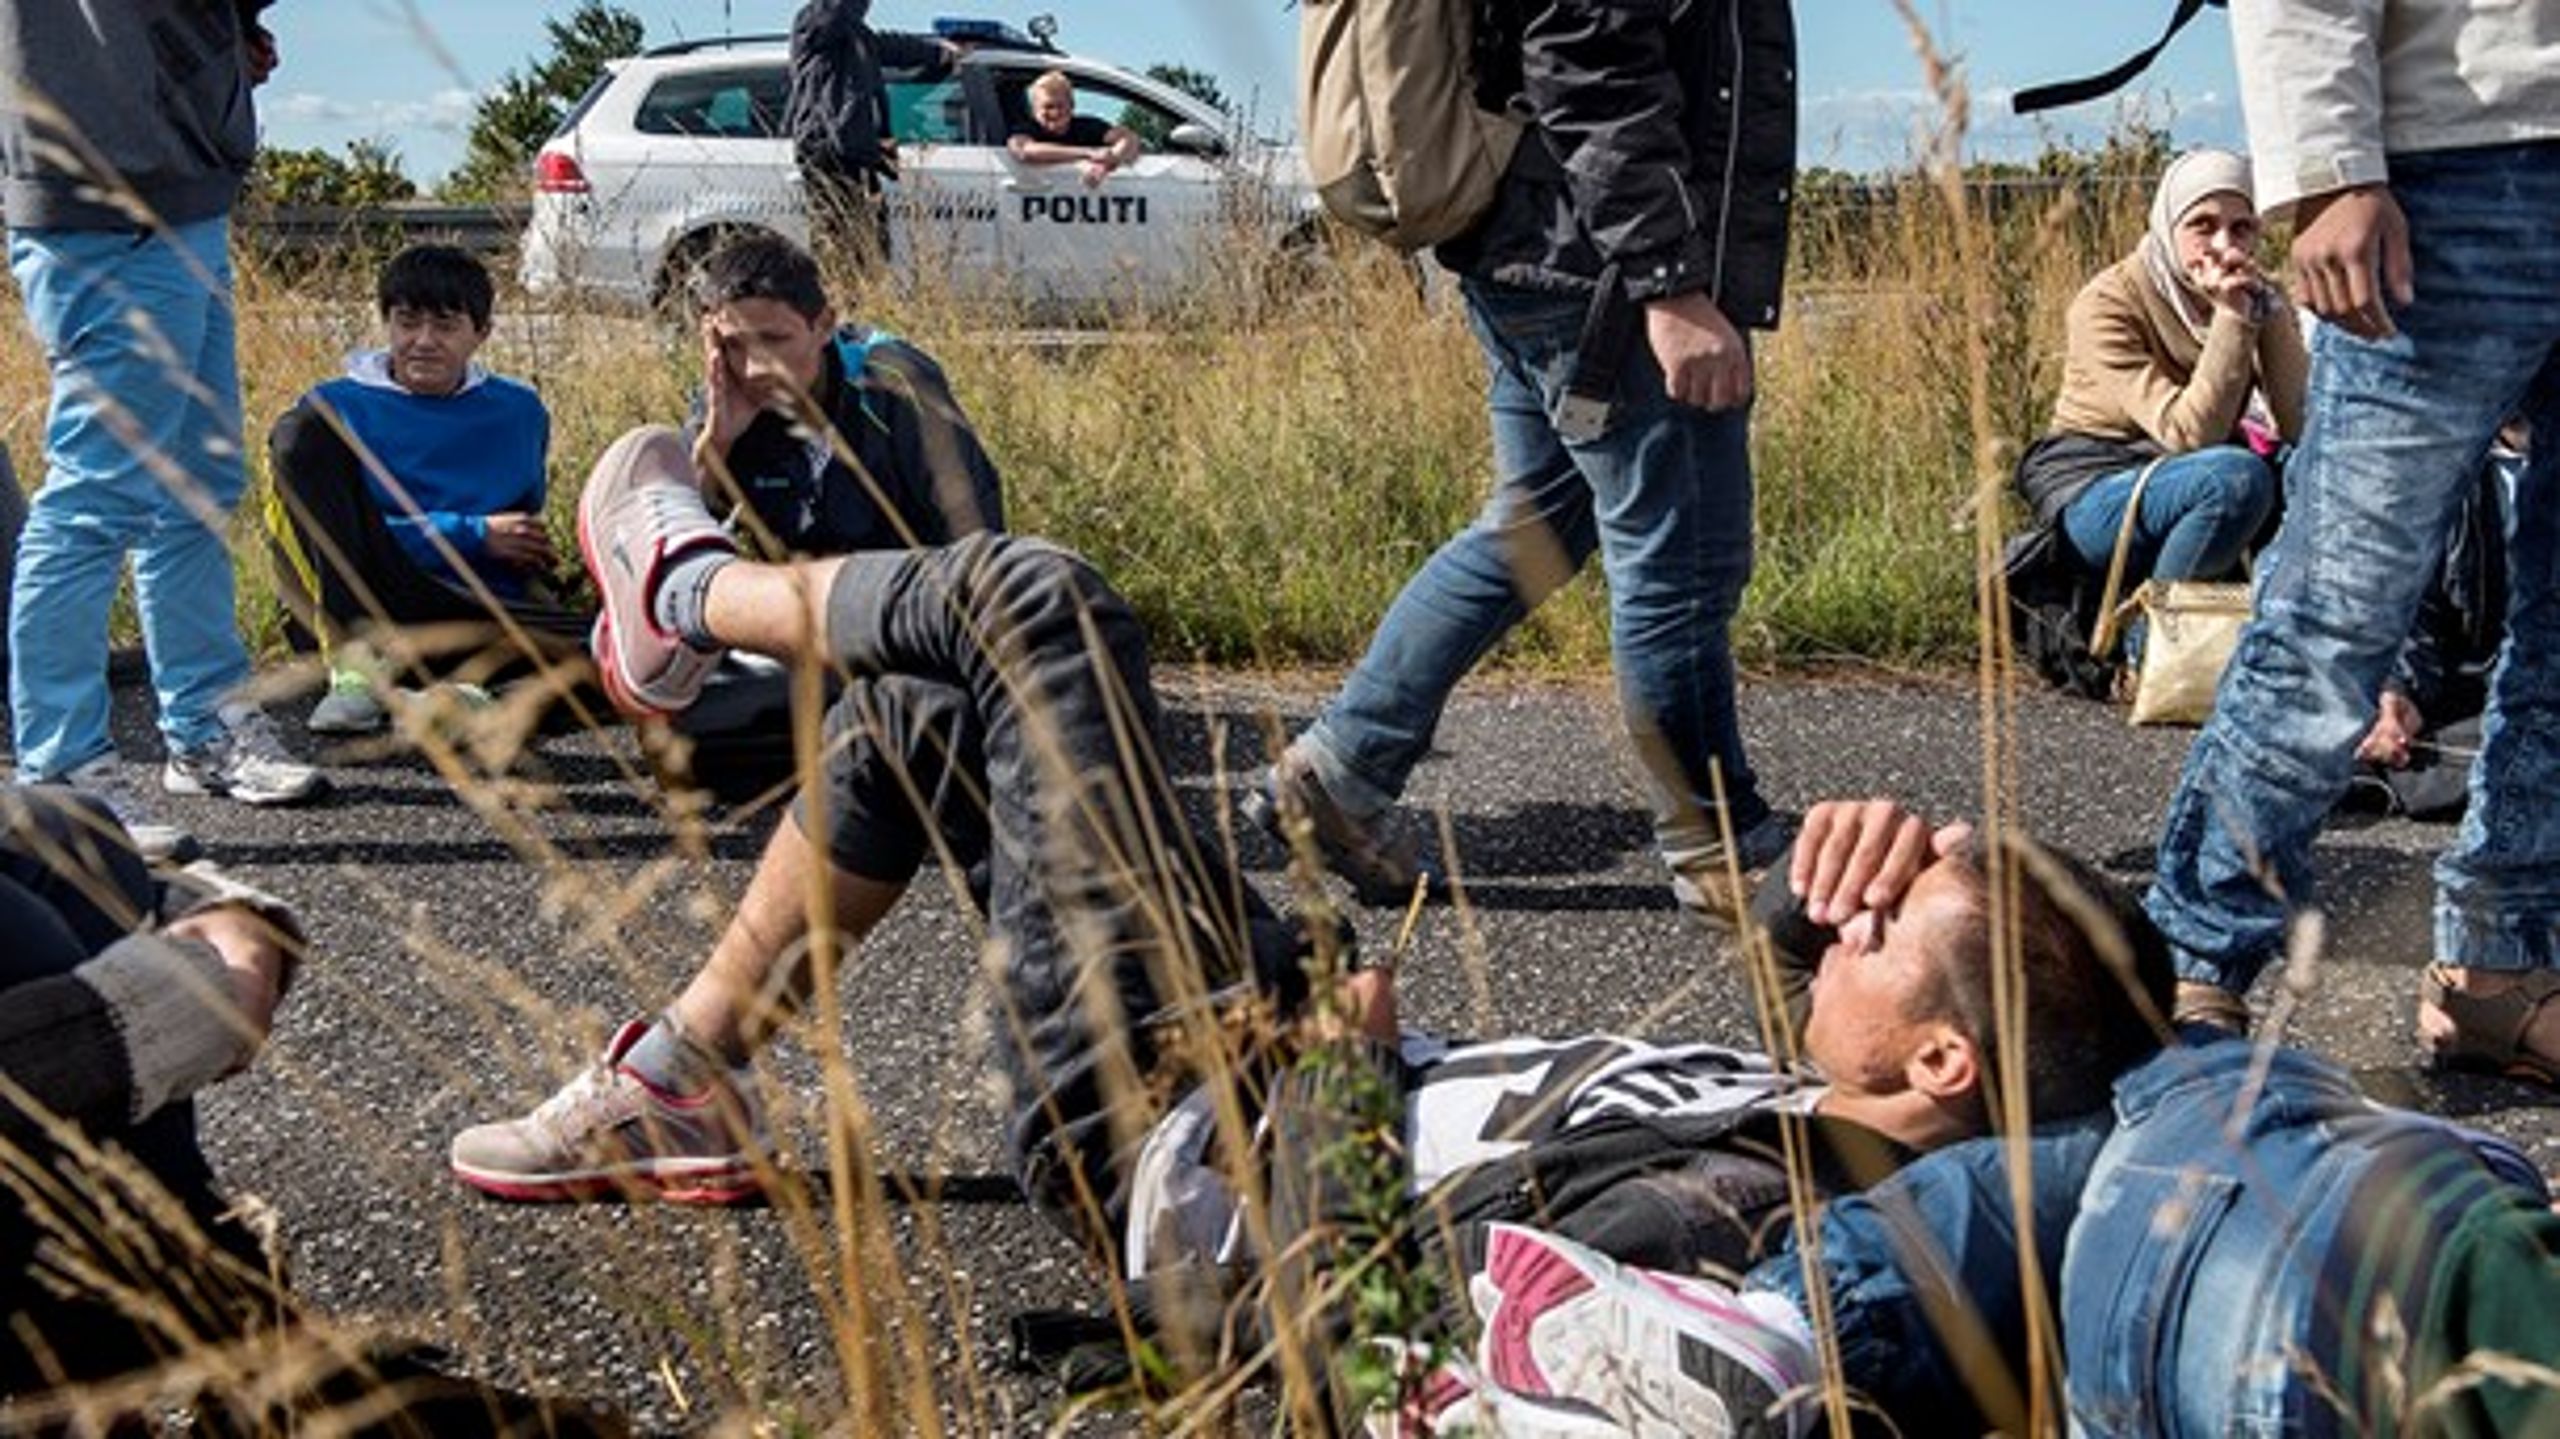 En dag i september 2015&nbsp;indtog knap 200 flygtninge Sydmotorvejen ved Rødby på Lolland. Året bød i det hele taget på den største flygtningestrøm til og gennem Danmark - og Europa - i mange år. I den offentlige debat omtales begivenheden som "flygtningekrisen".